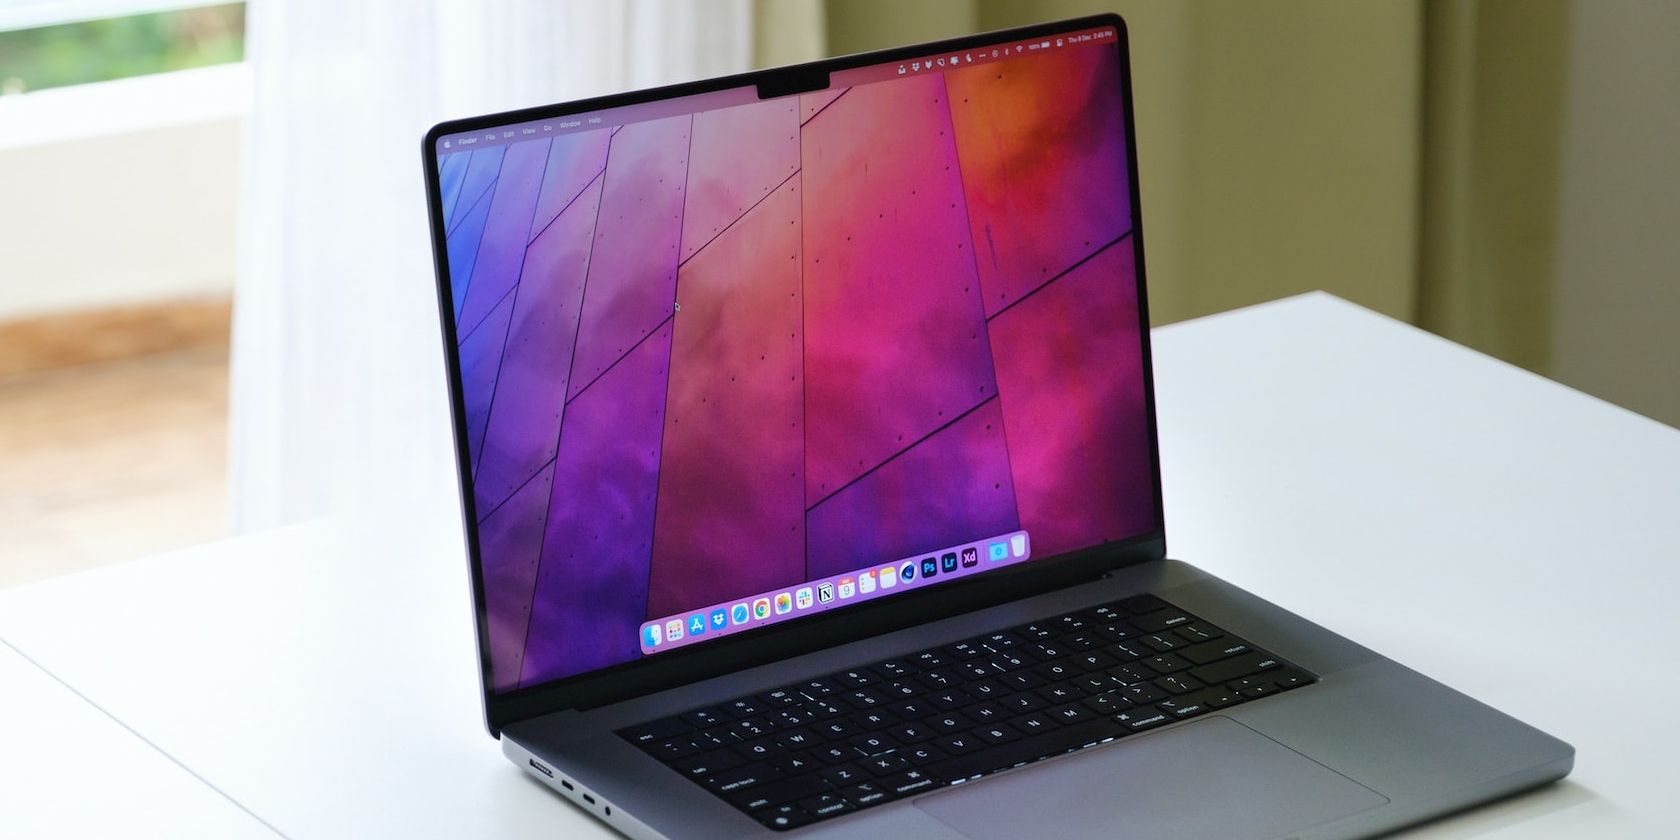 Apple MacBook Pro trên bàn trước cửa sổ